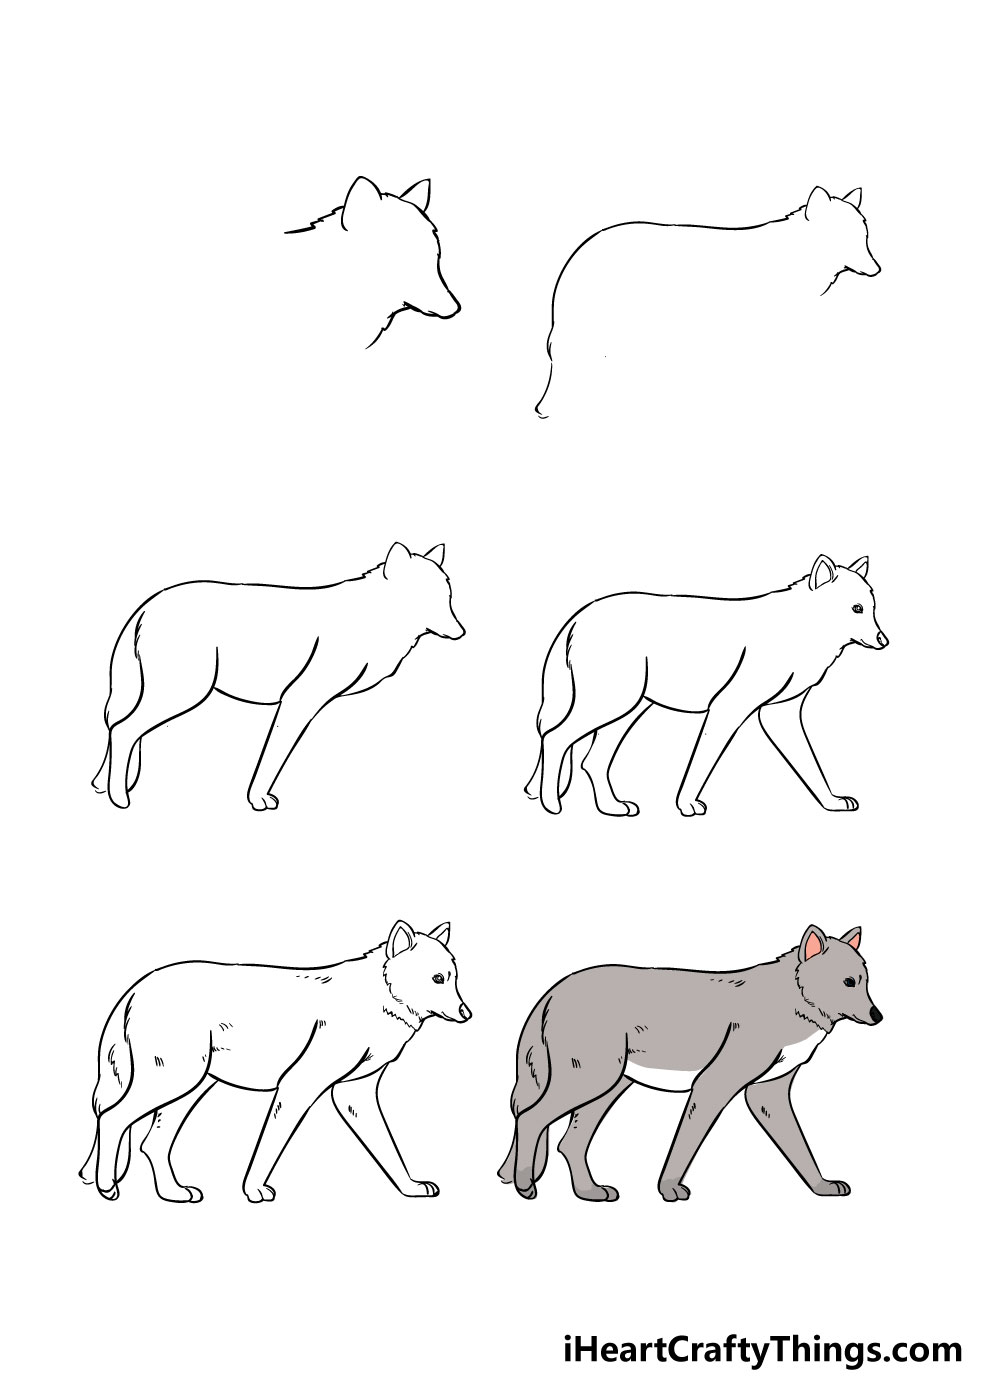 How to draw Wolf in 6 easy steps - Hướng dẫn cách vẽ con chó sói đơn giản với 6 bước cơ bản